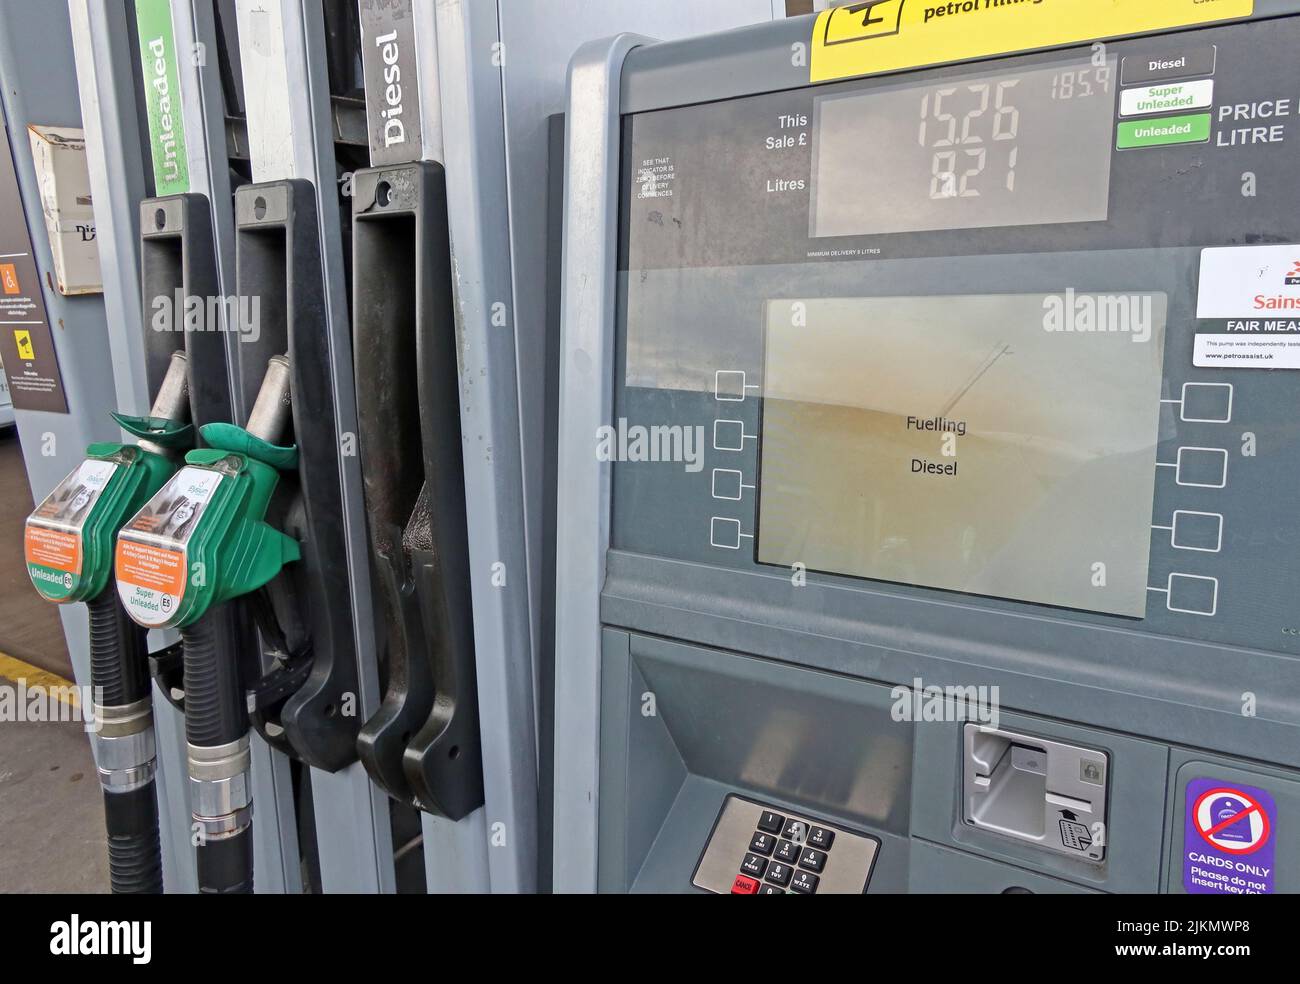 Zapfsäulen einer Agip-Tankstelle. Diesel, Super, bleifreies Benzin  Stockfotografie - Alamy